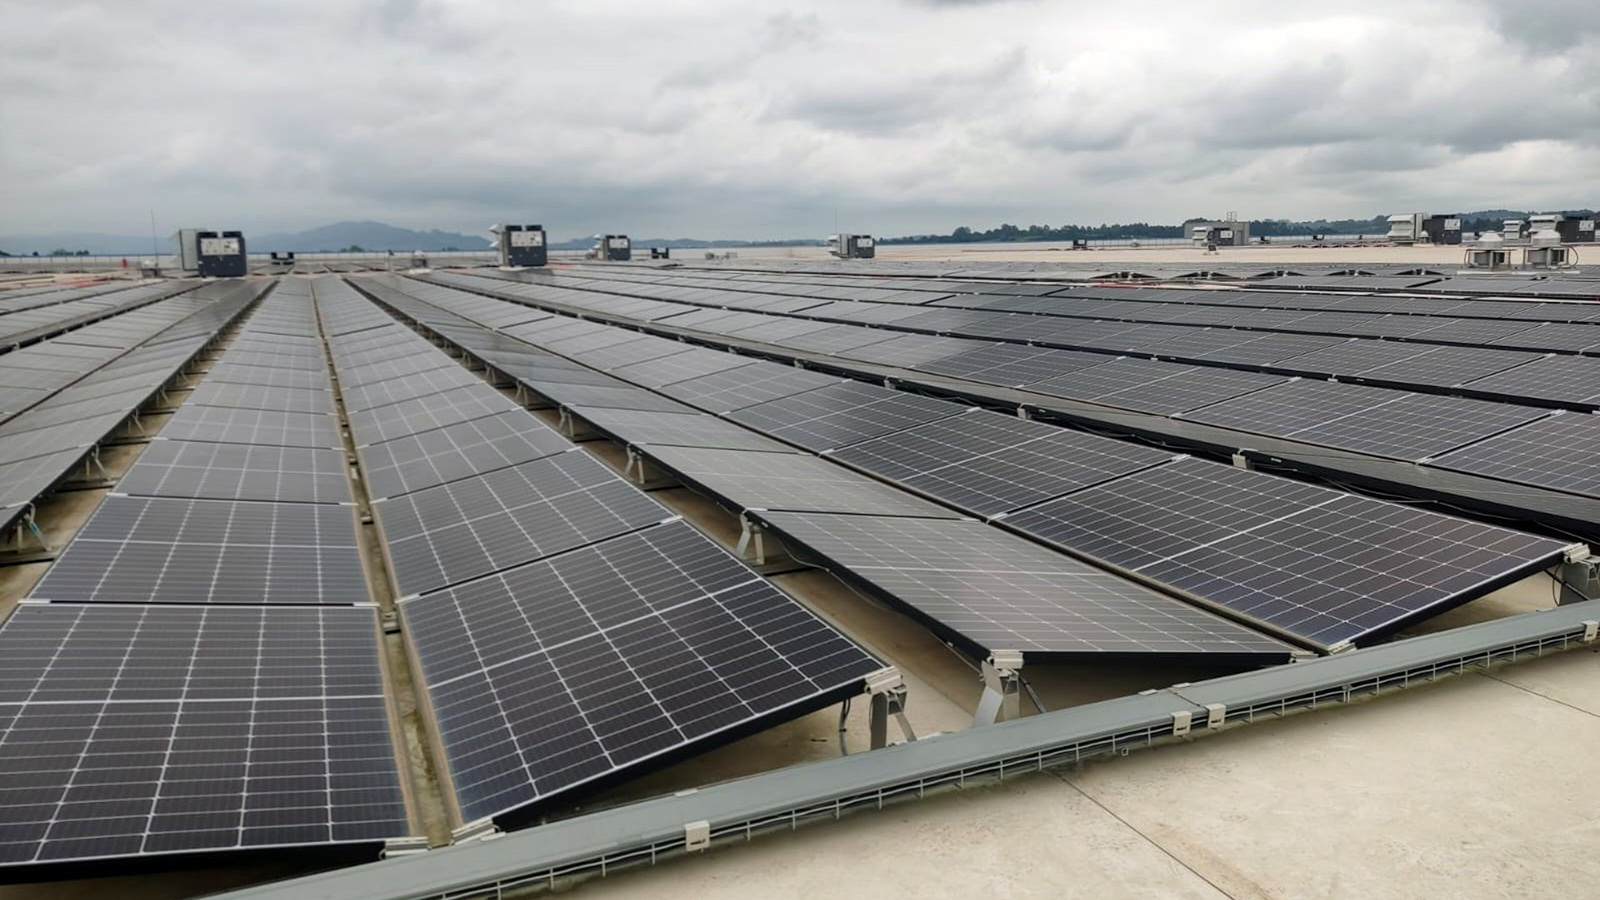 Placas solares instaladas en la azotea del Centro Logístico de Amazon en Bobes, Siero